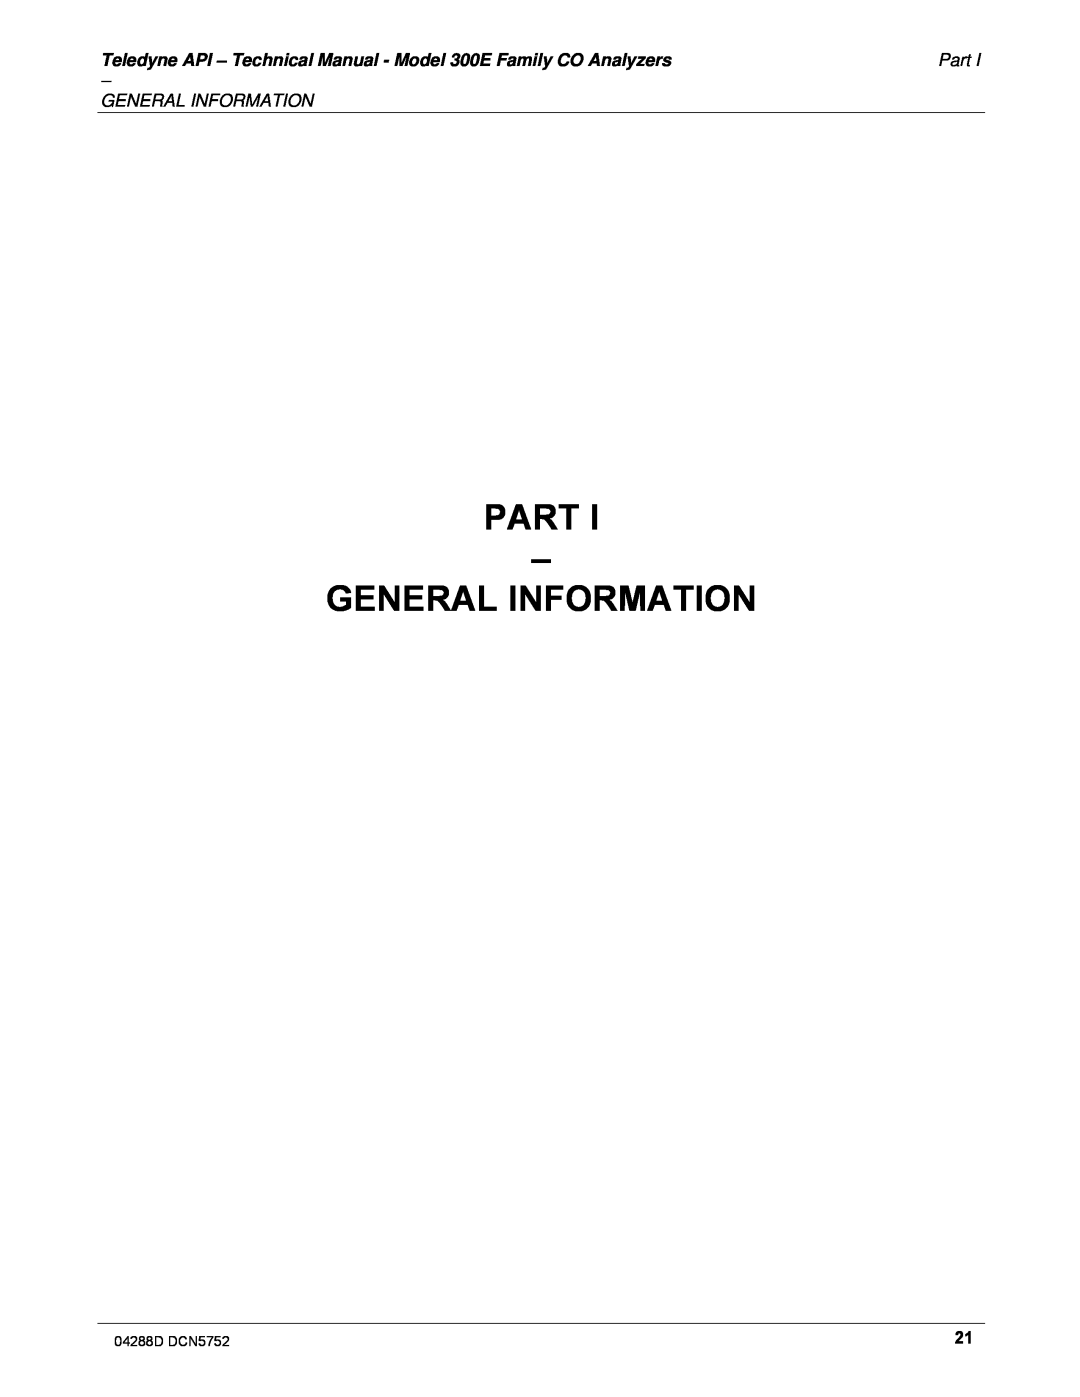 Teledyne M300EM operation manual Part – General Information 